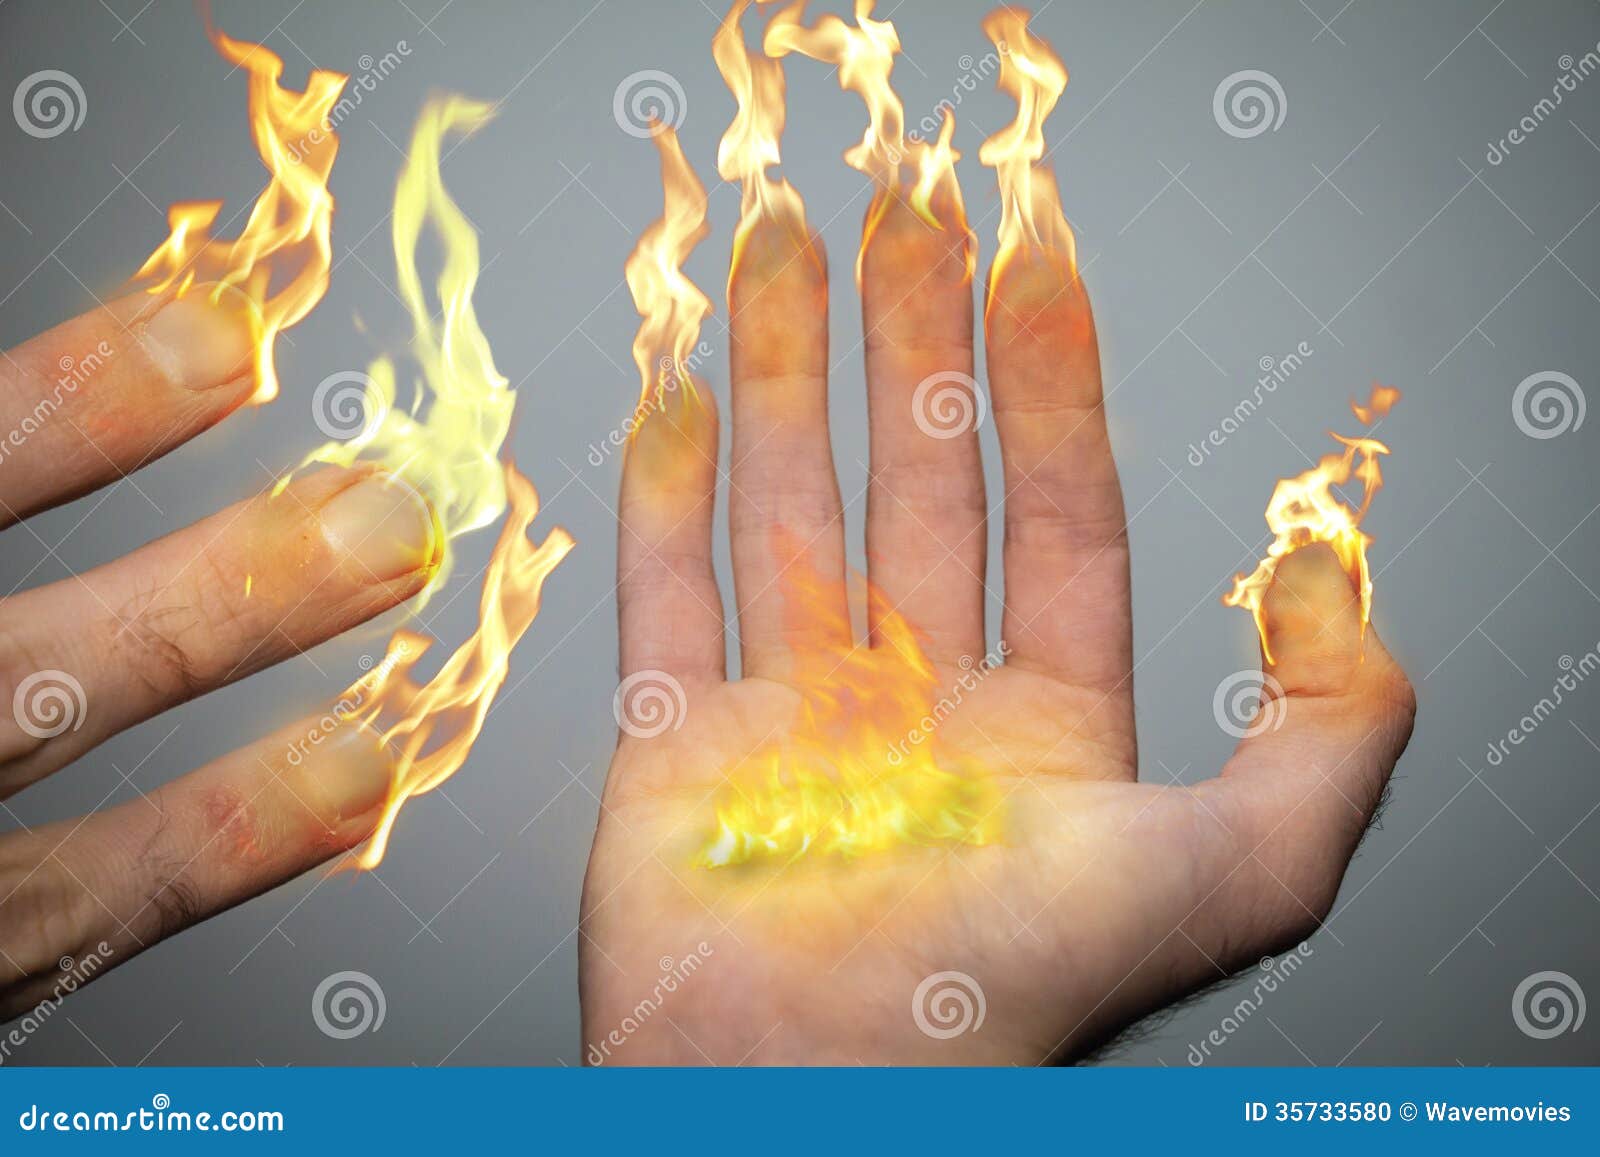 Сильно горят руки. Огонь в руке. Огонь на ладони. Пламя на ладони. Пламя в руке.